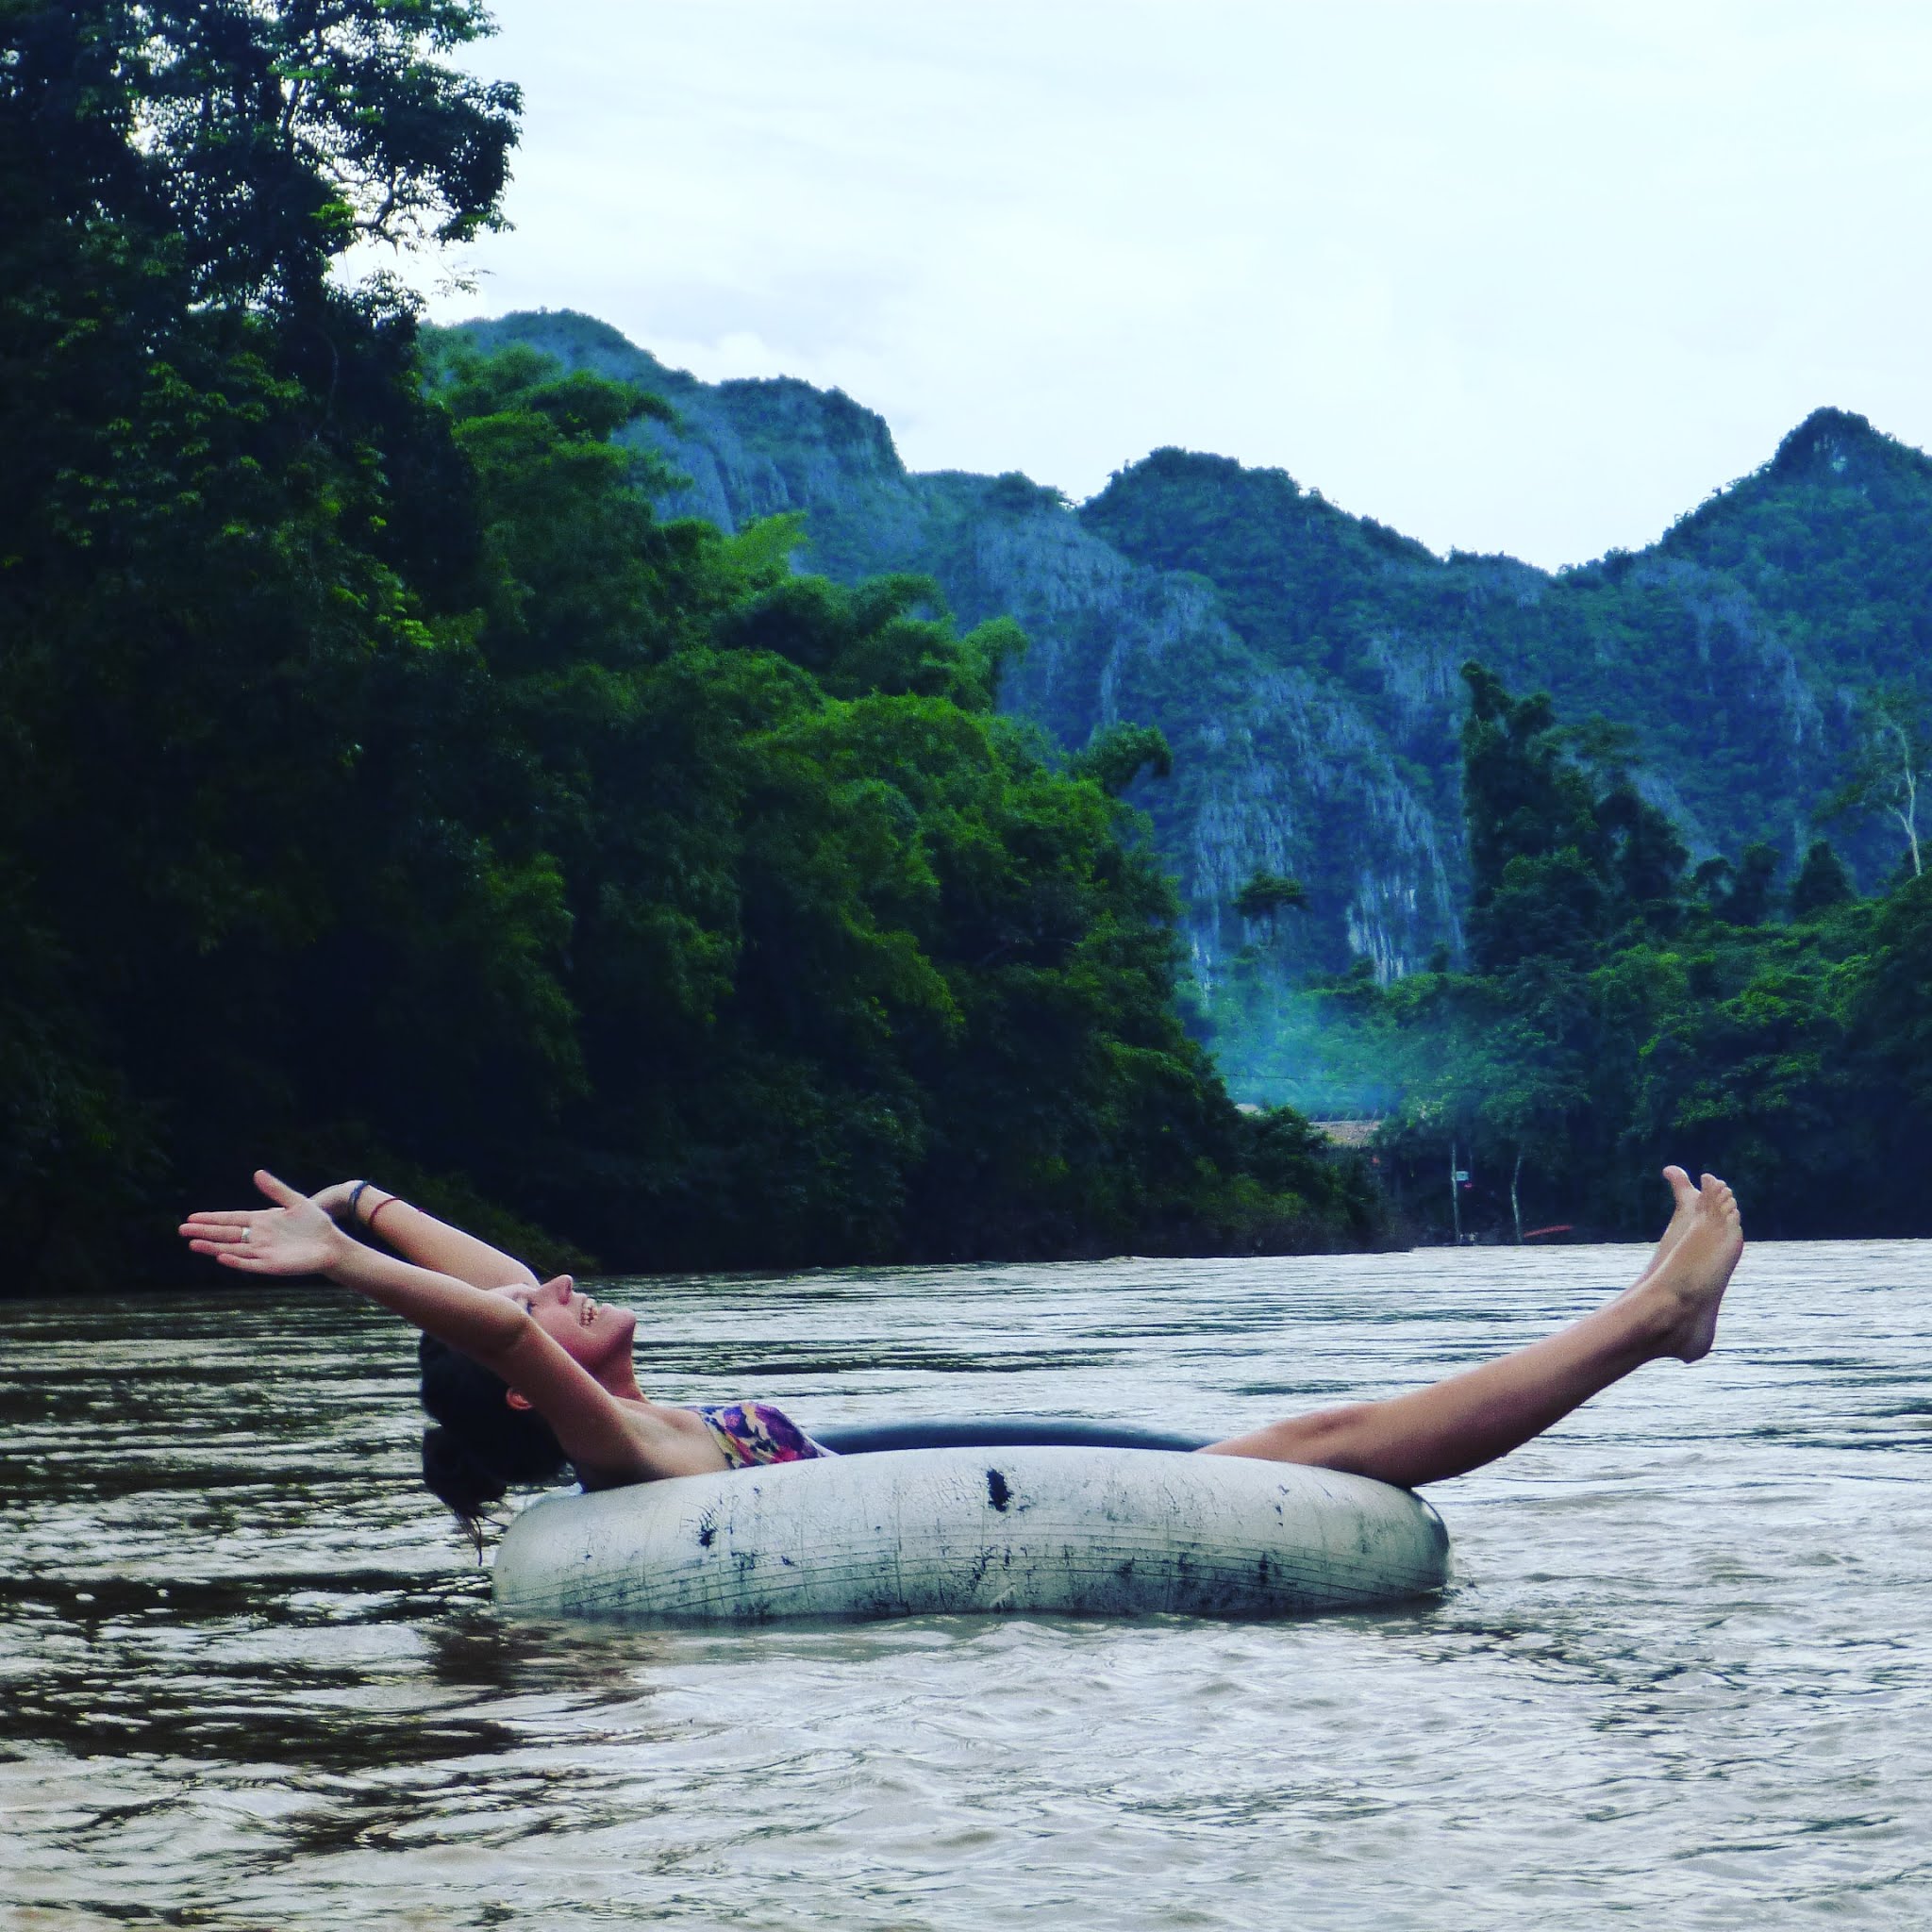 lydia swinscoe floating down mekong river in an inner tube near vang vieng